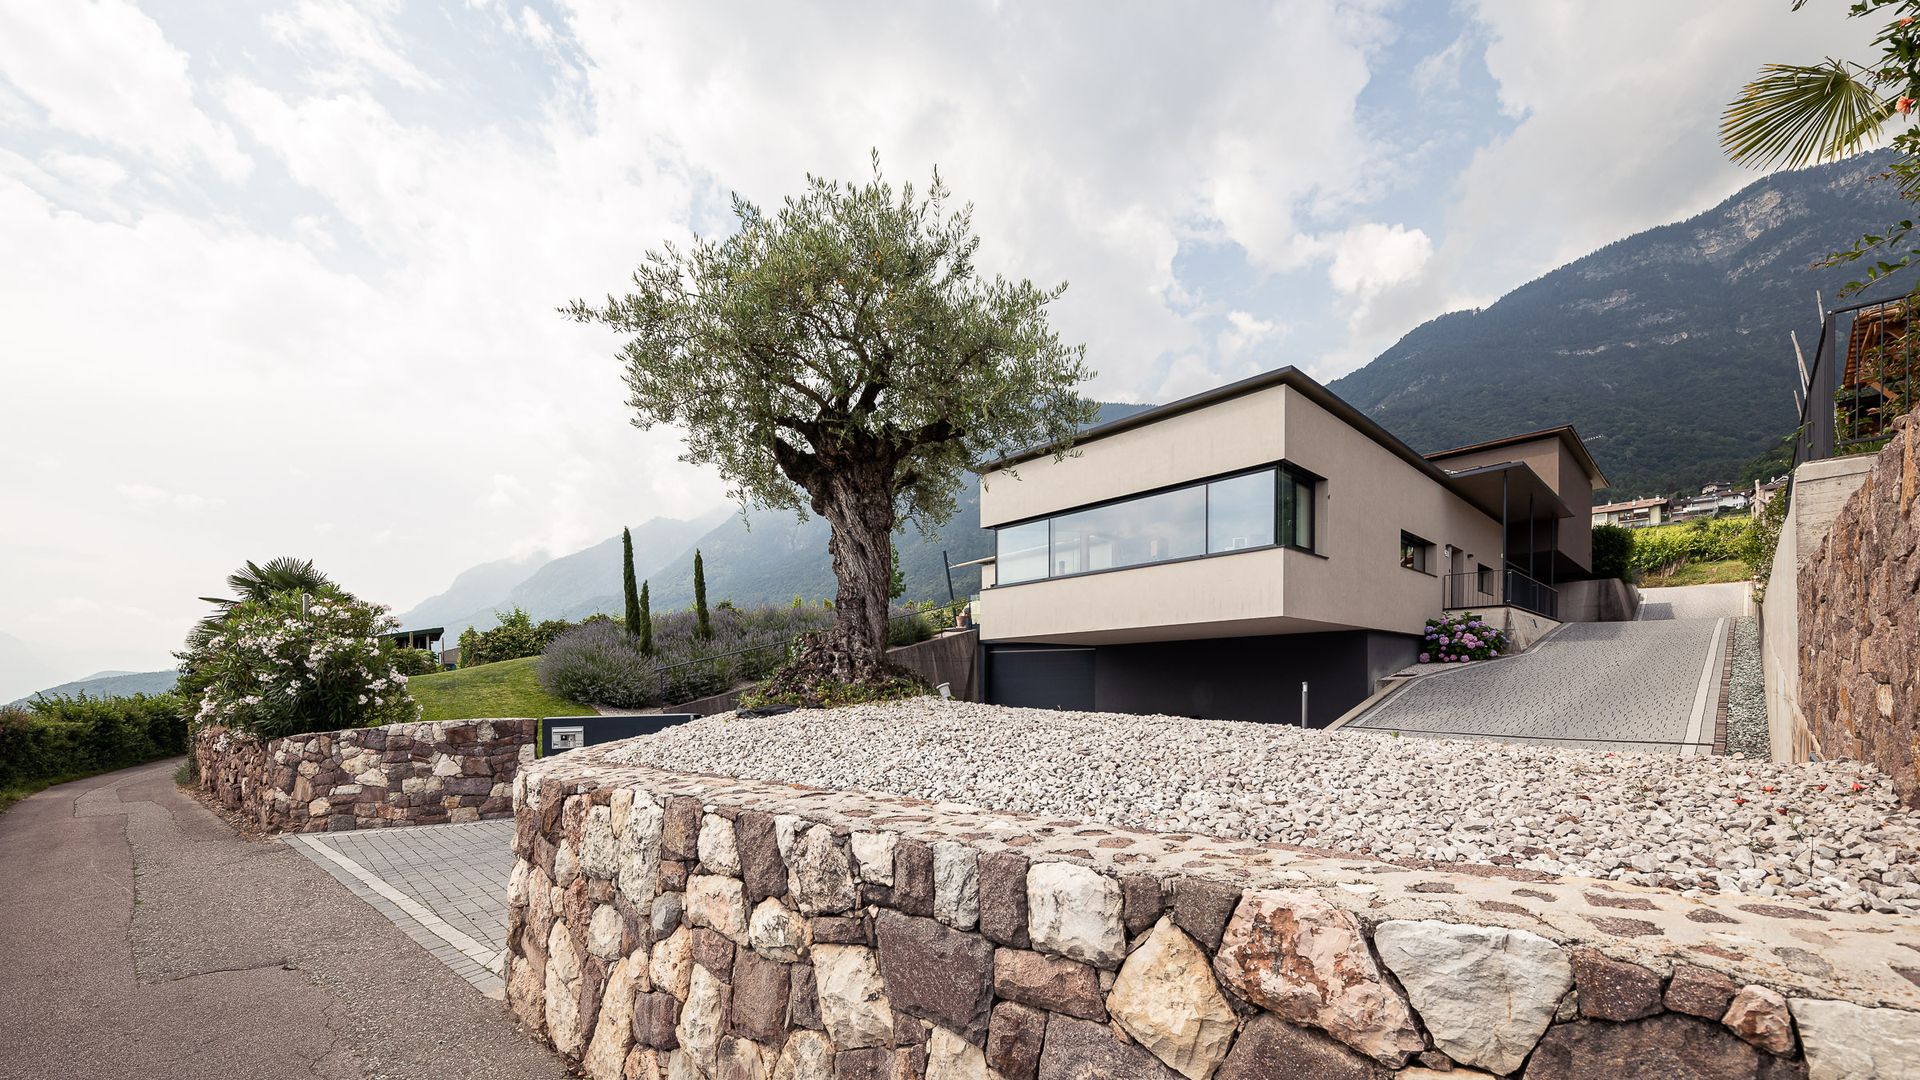 Villa Pernstich vacanze Strada del Vino dell'Alto Adige